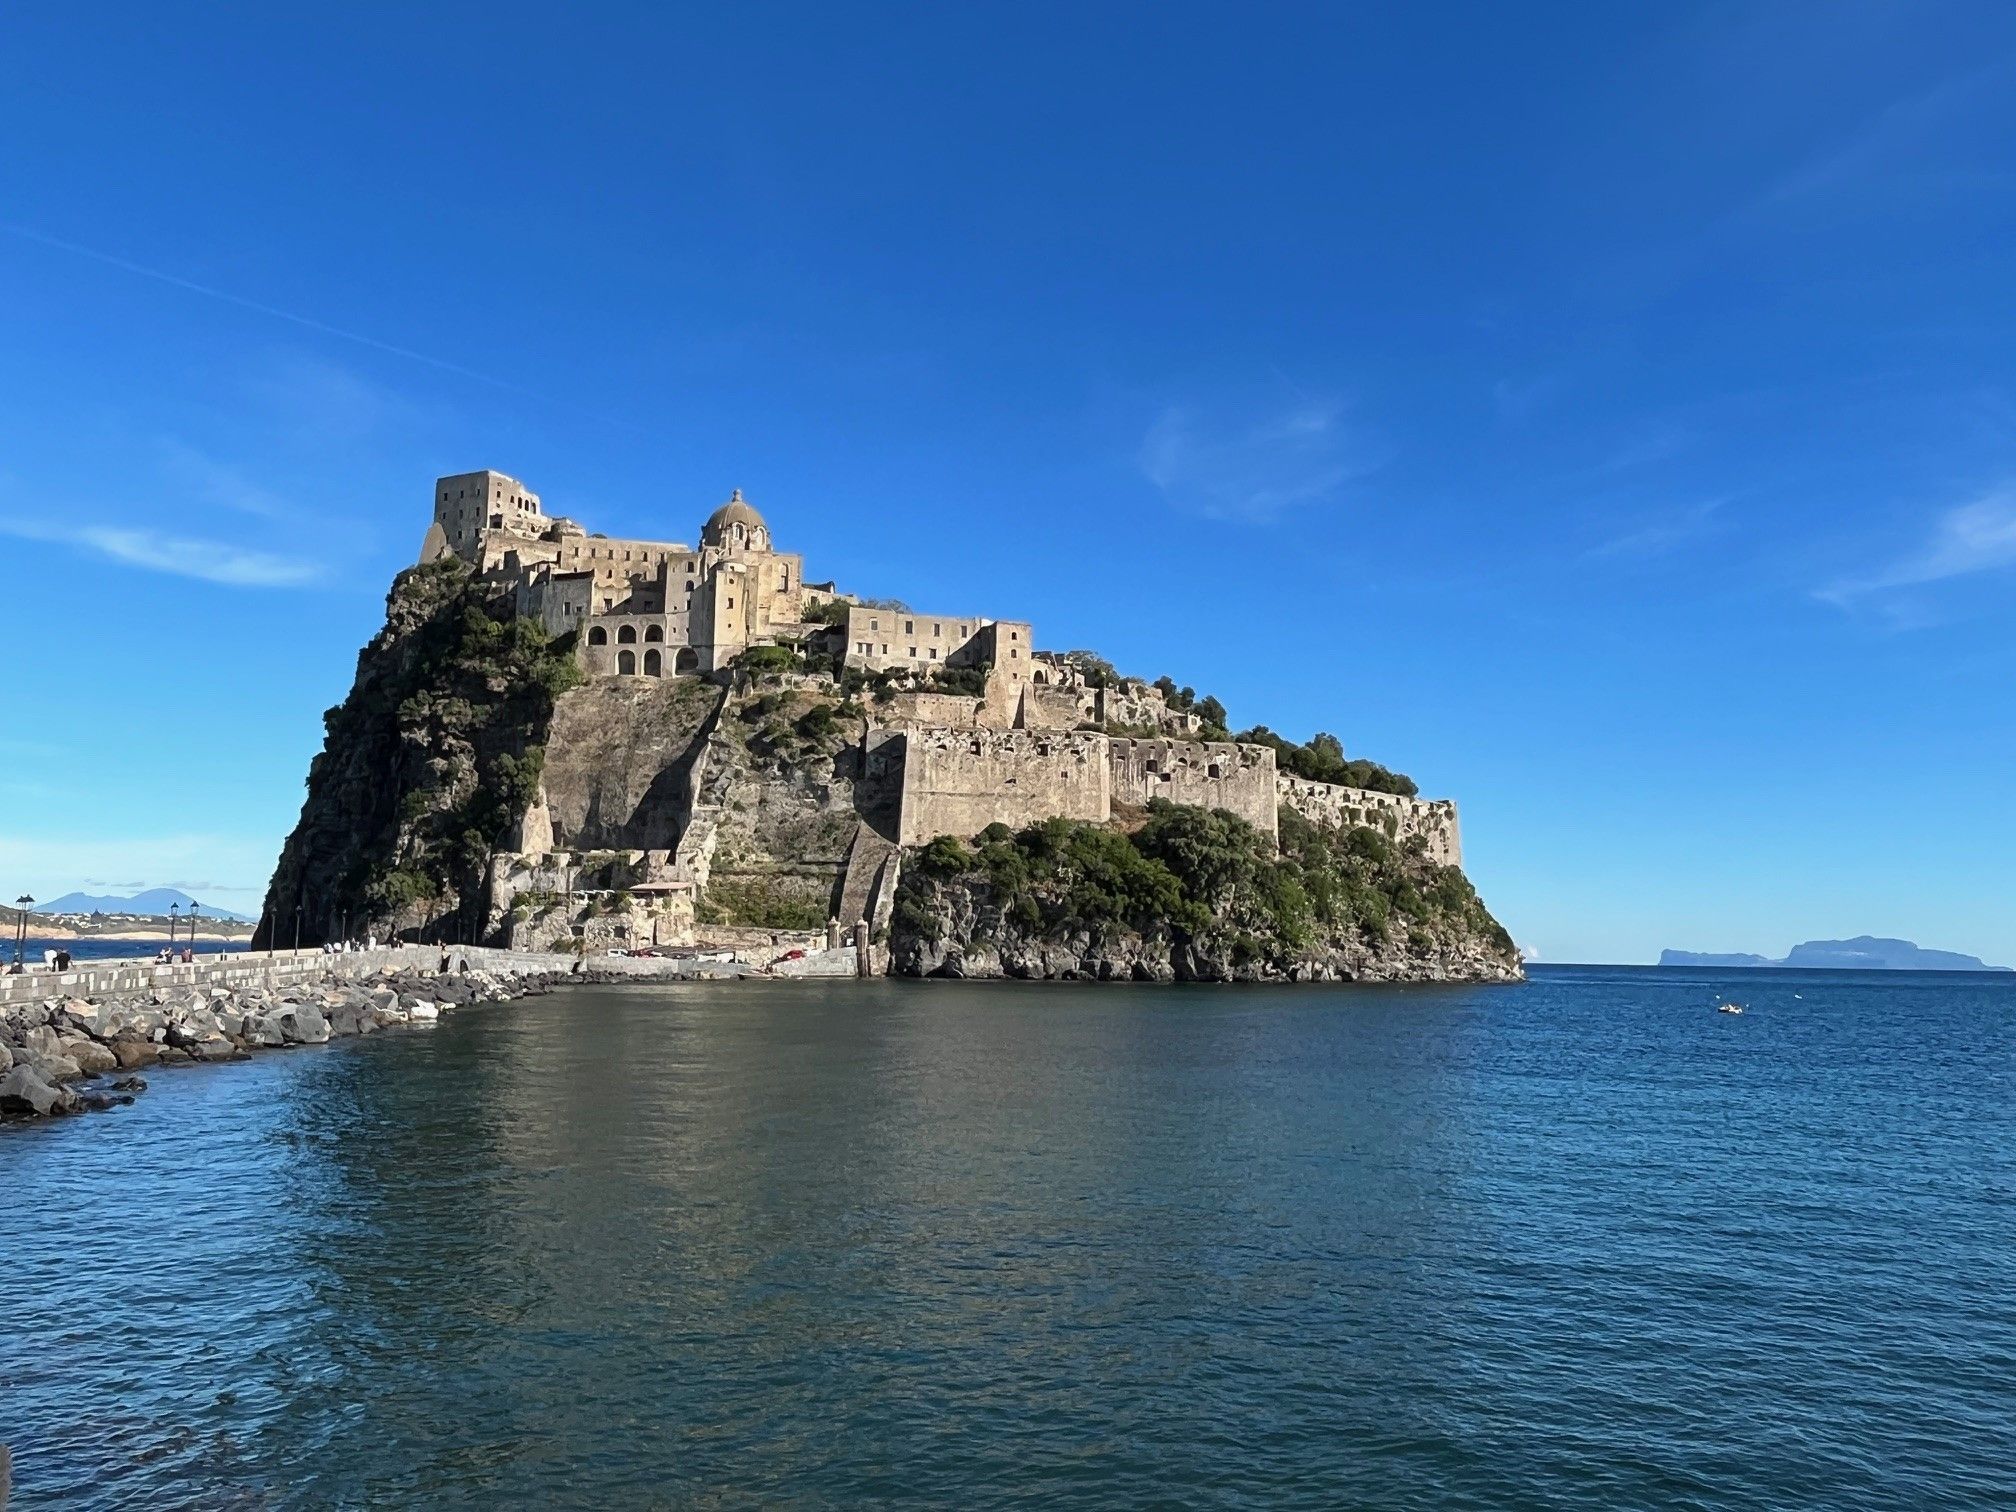 Castello Aragonese auf Ischia. Links der Vesuv und rechts Capri.